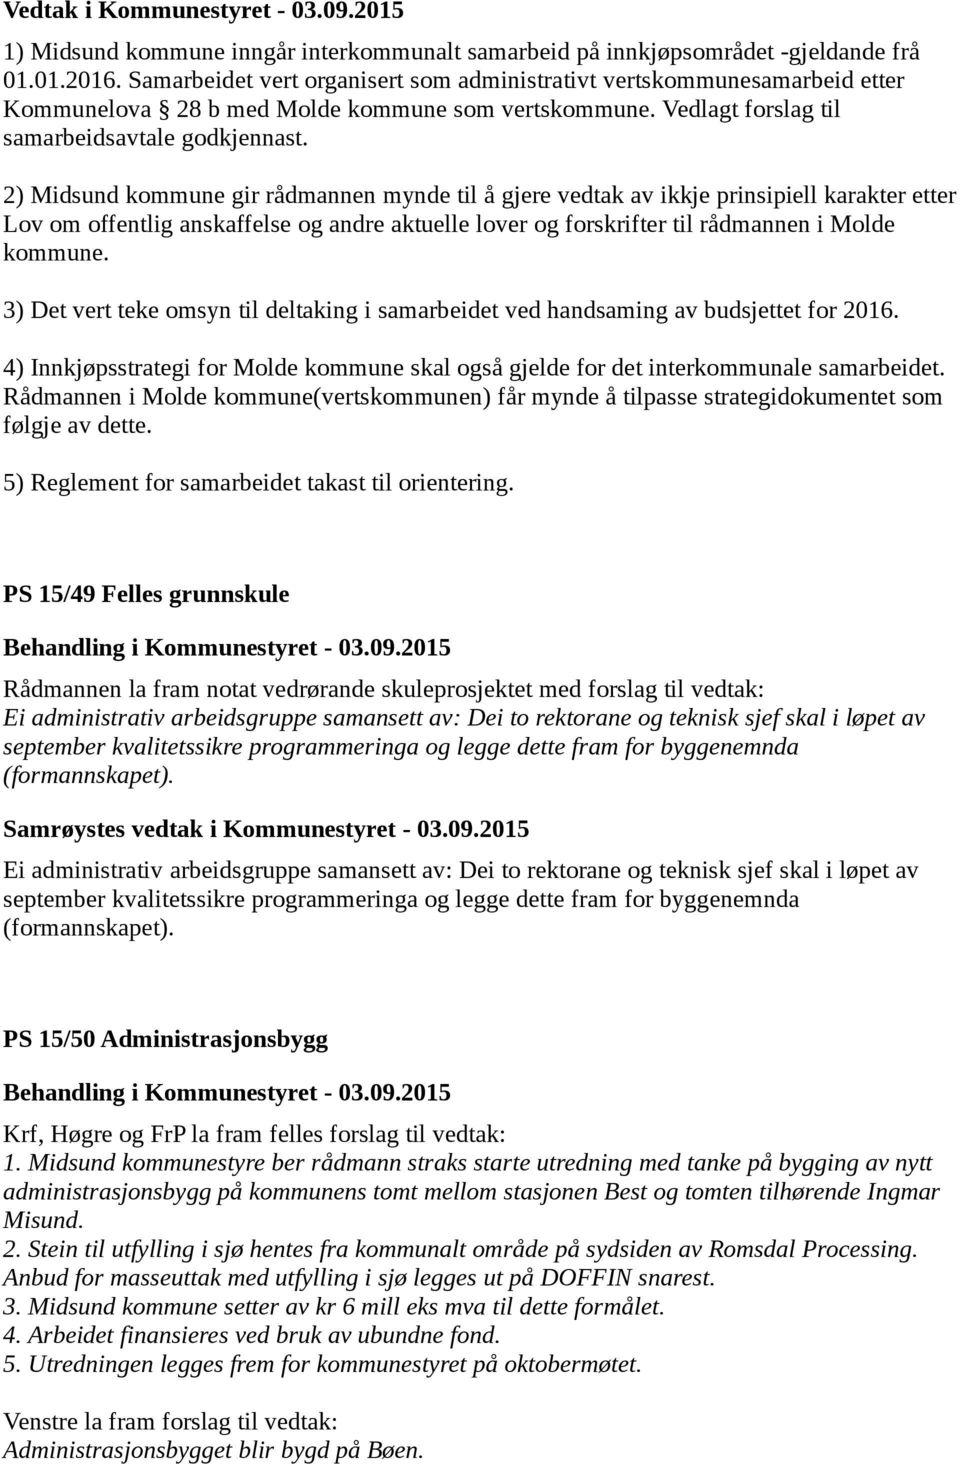 2) Midsund kommune gir rådmannen mynde til å gjere vedtak av ikkje prinsipiell karakter etter Lov om offentlig anskaffelse og andre aktuelle lover og forskrifter til rådmannen i Molde kommune.